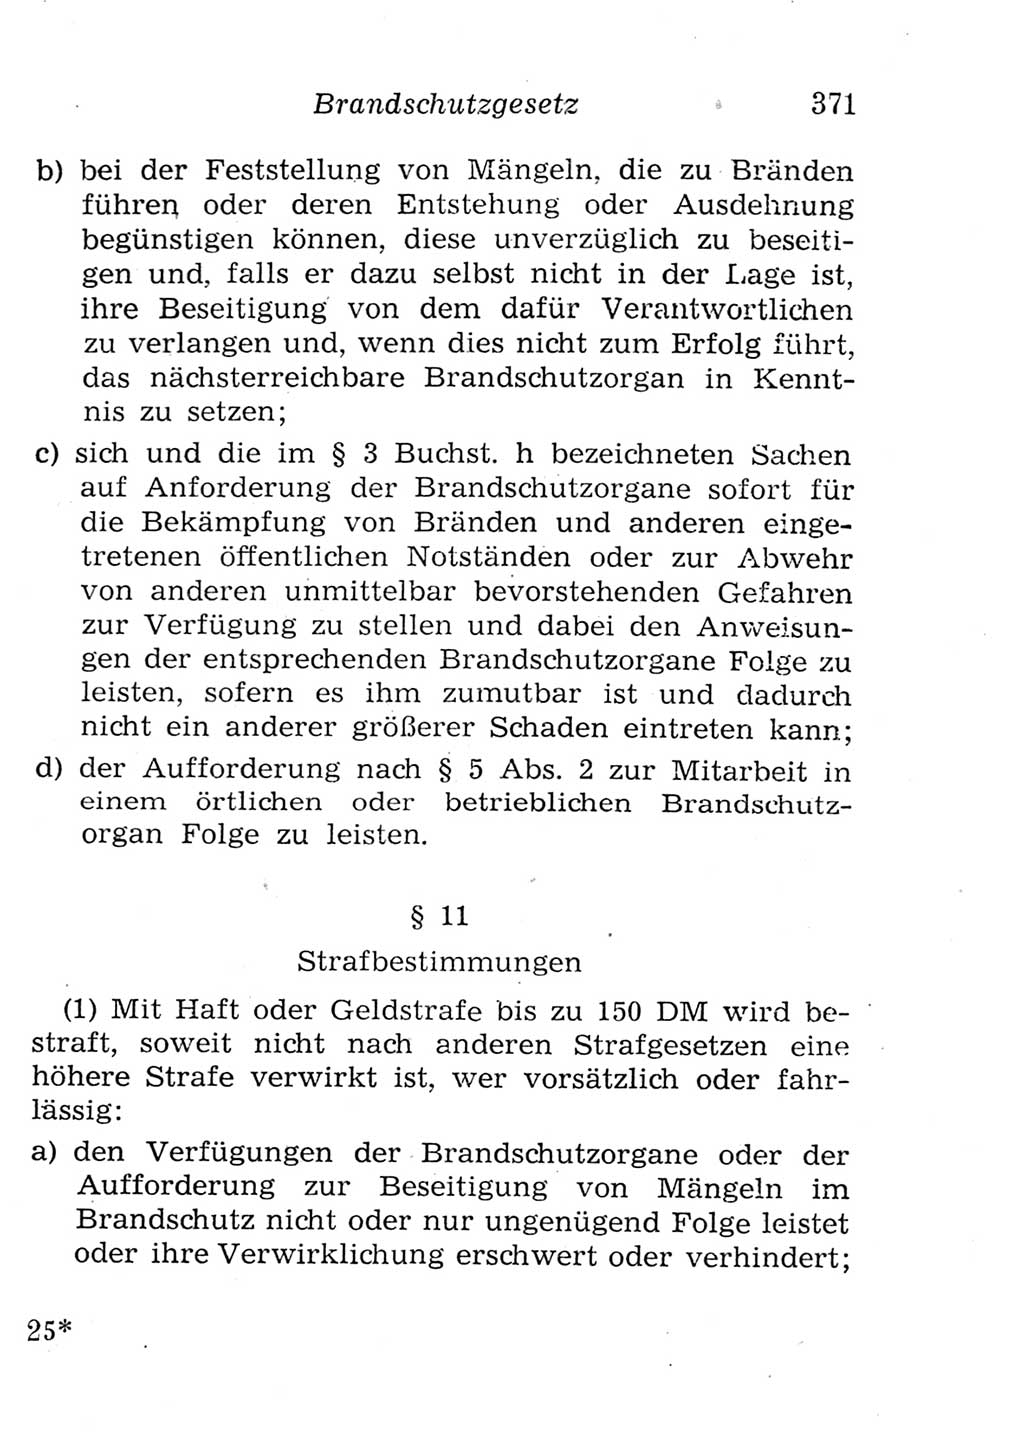 Strafgesetzbuch (StGB) und andere Strafgesetze [Deutsche Demokratische Republik (DDR)] 1957, Seite 371 (StGB Strafges. DDR 1957, S. 371)